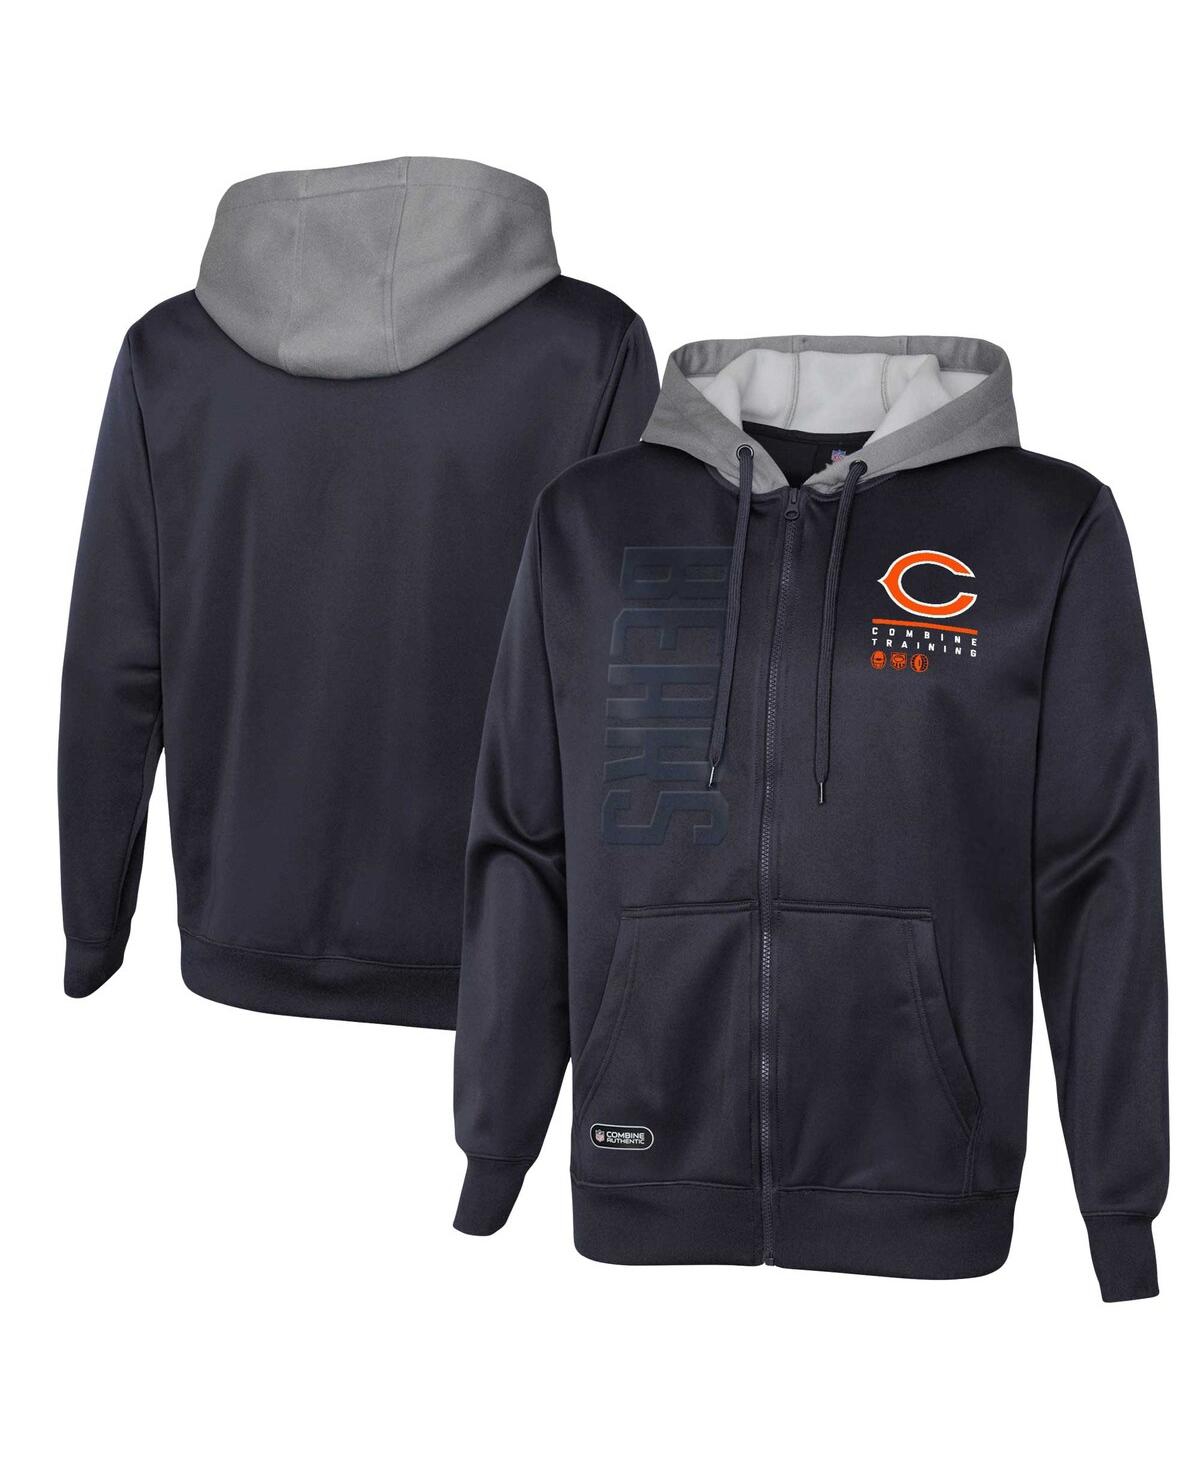 Shop Outerstuff Men's Navy Chicago Bears Combine Authentic Field Play Full-zip Hoodie Sweatshirt